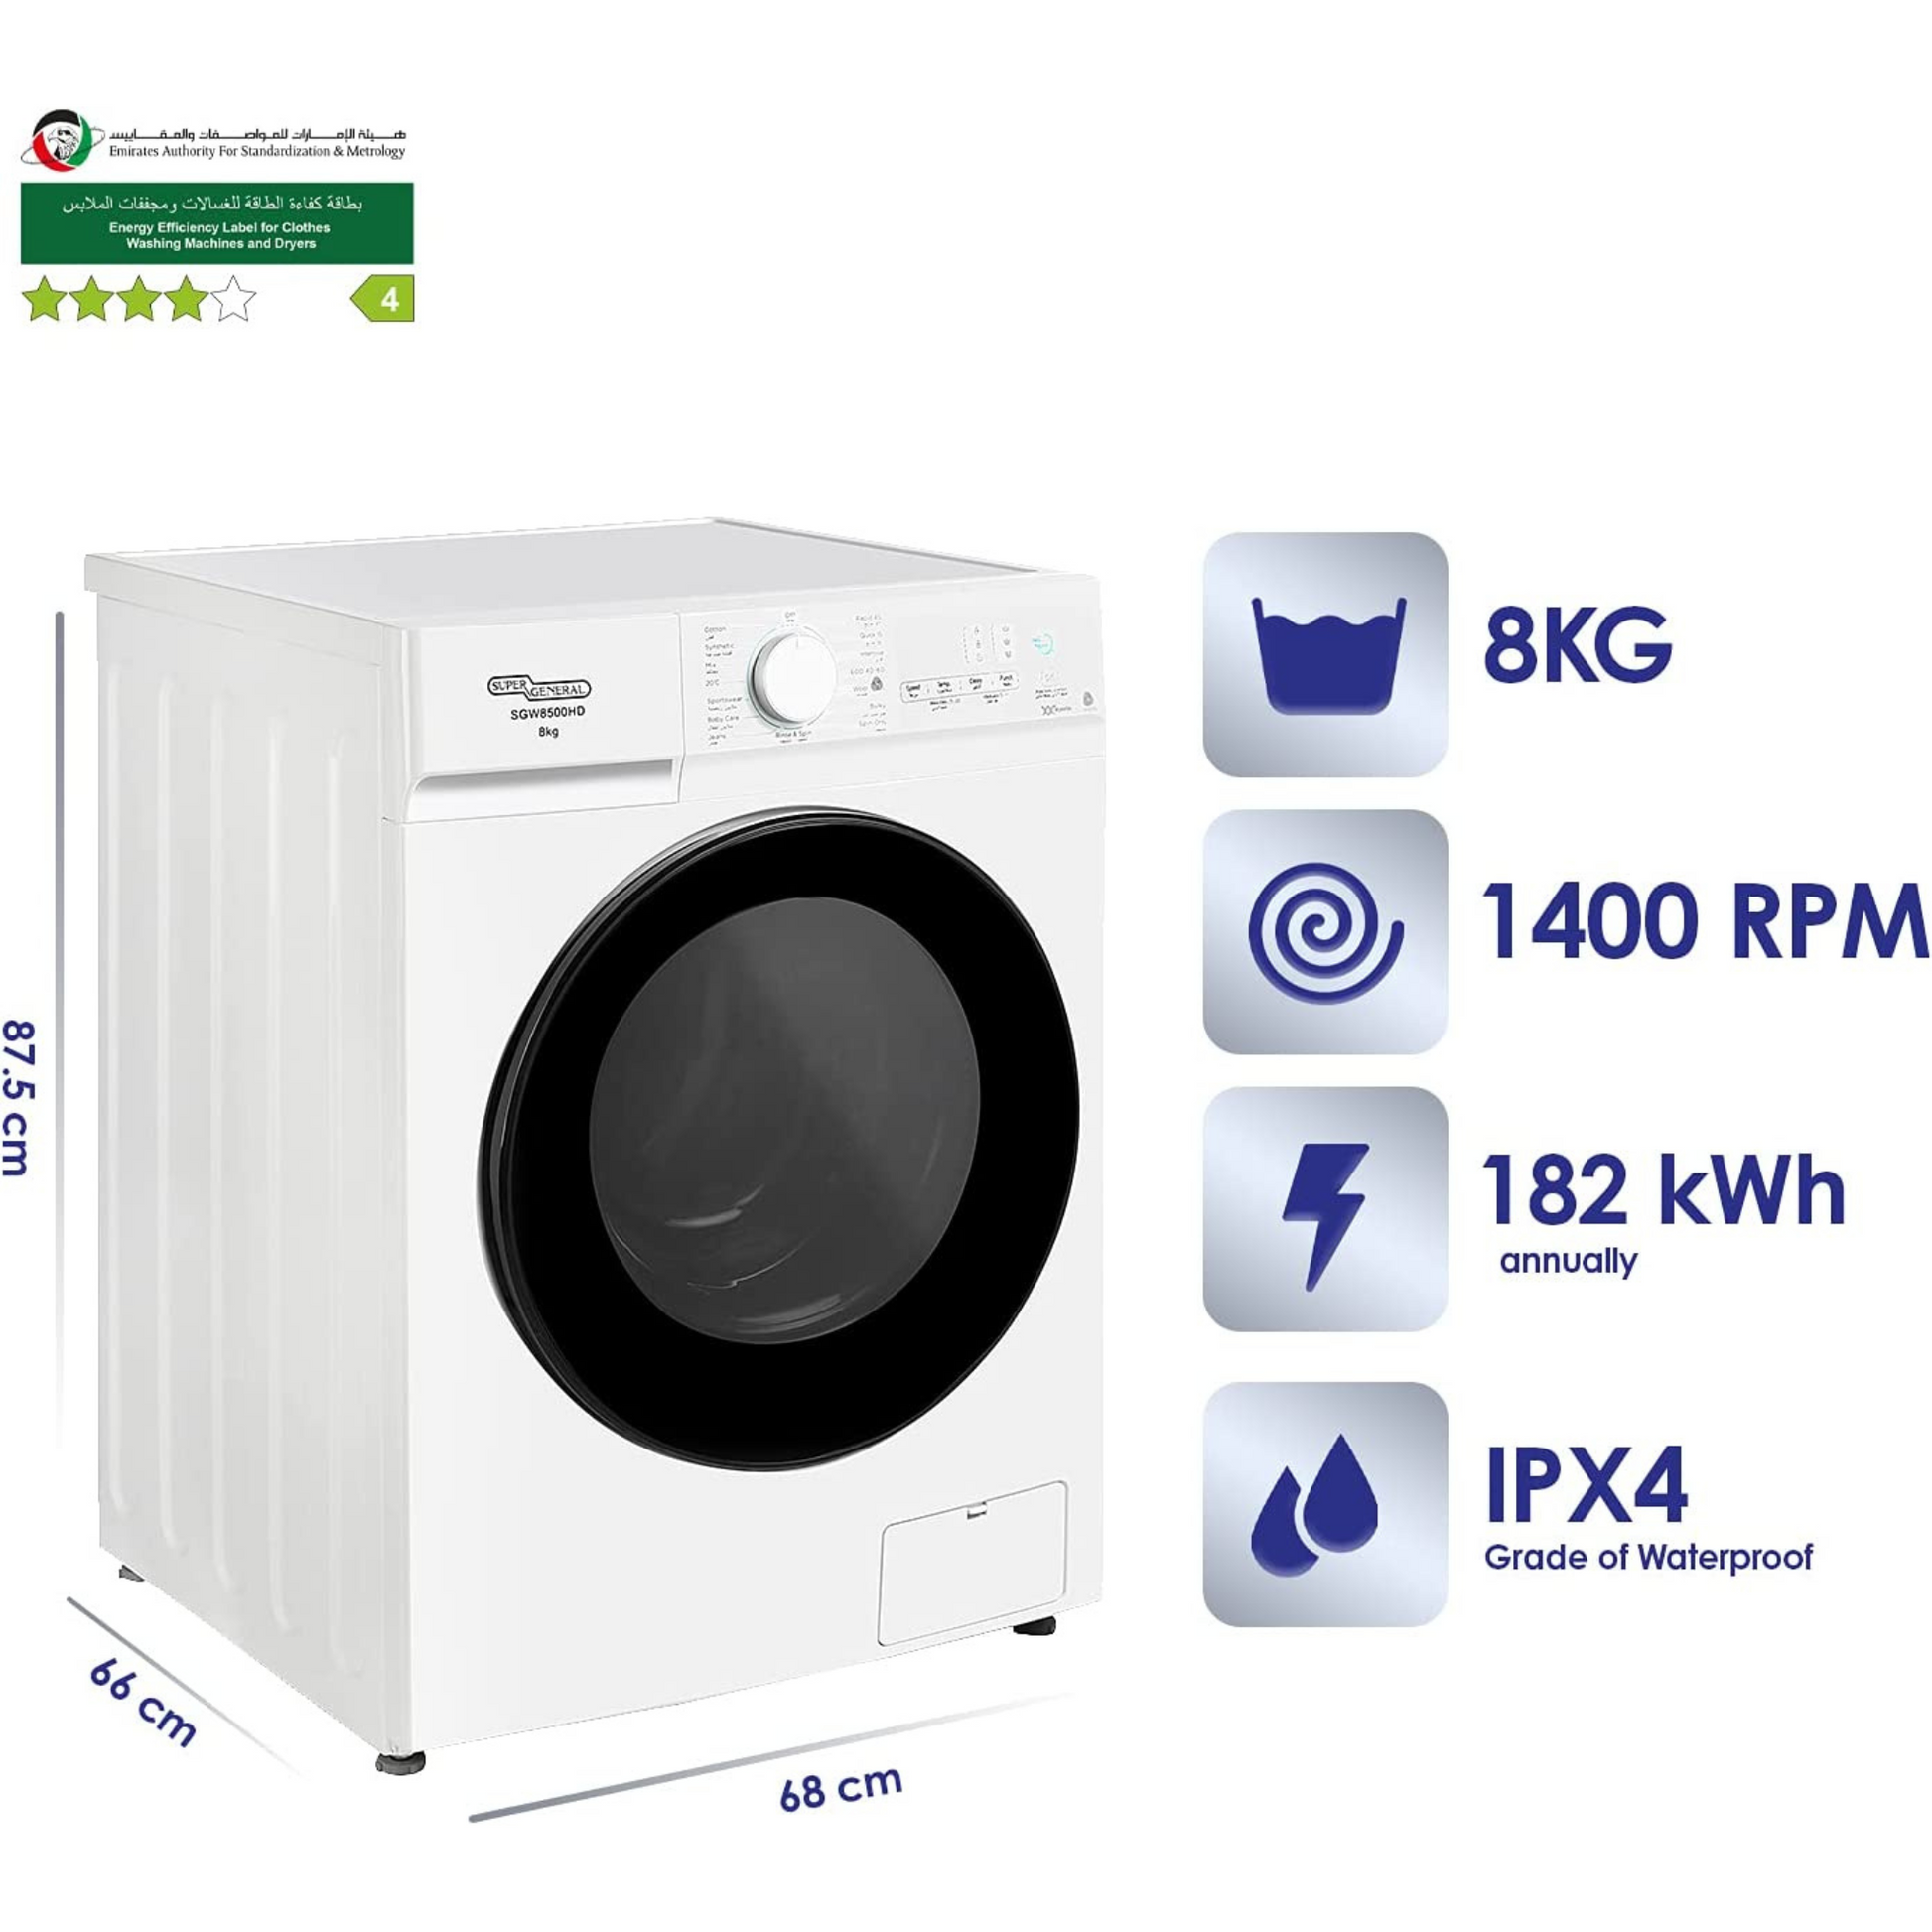 Super General 8KG Fully Automatic Washing Machine, SGW8500HD